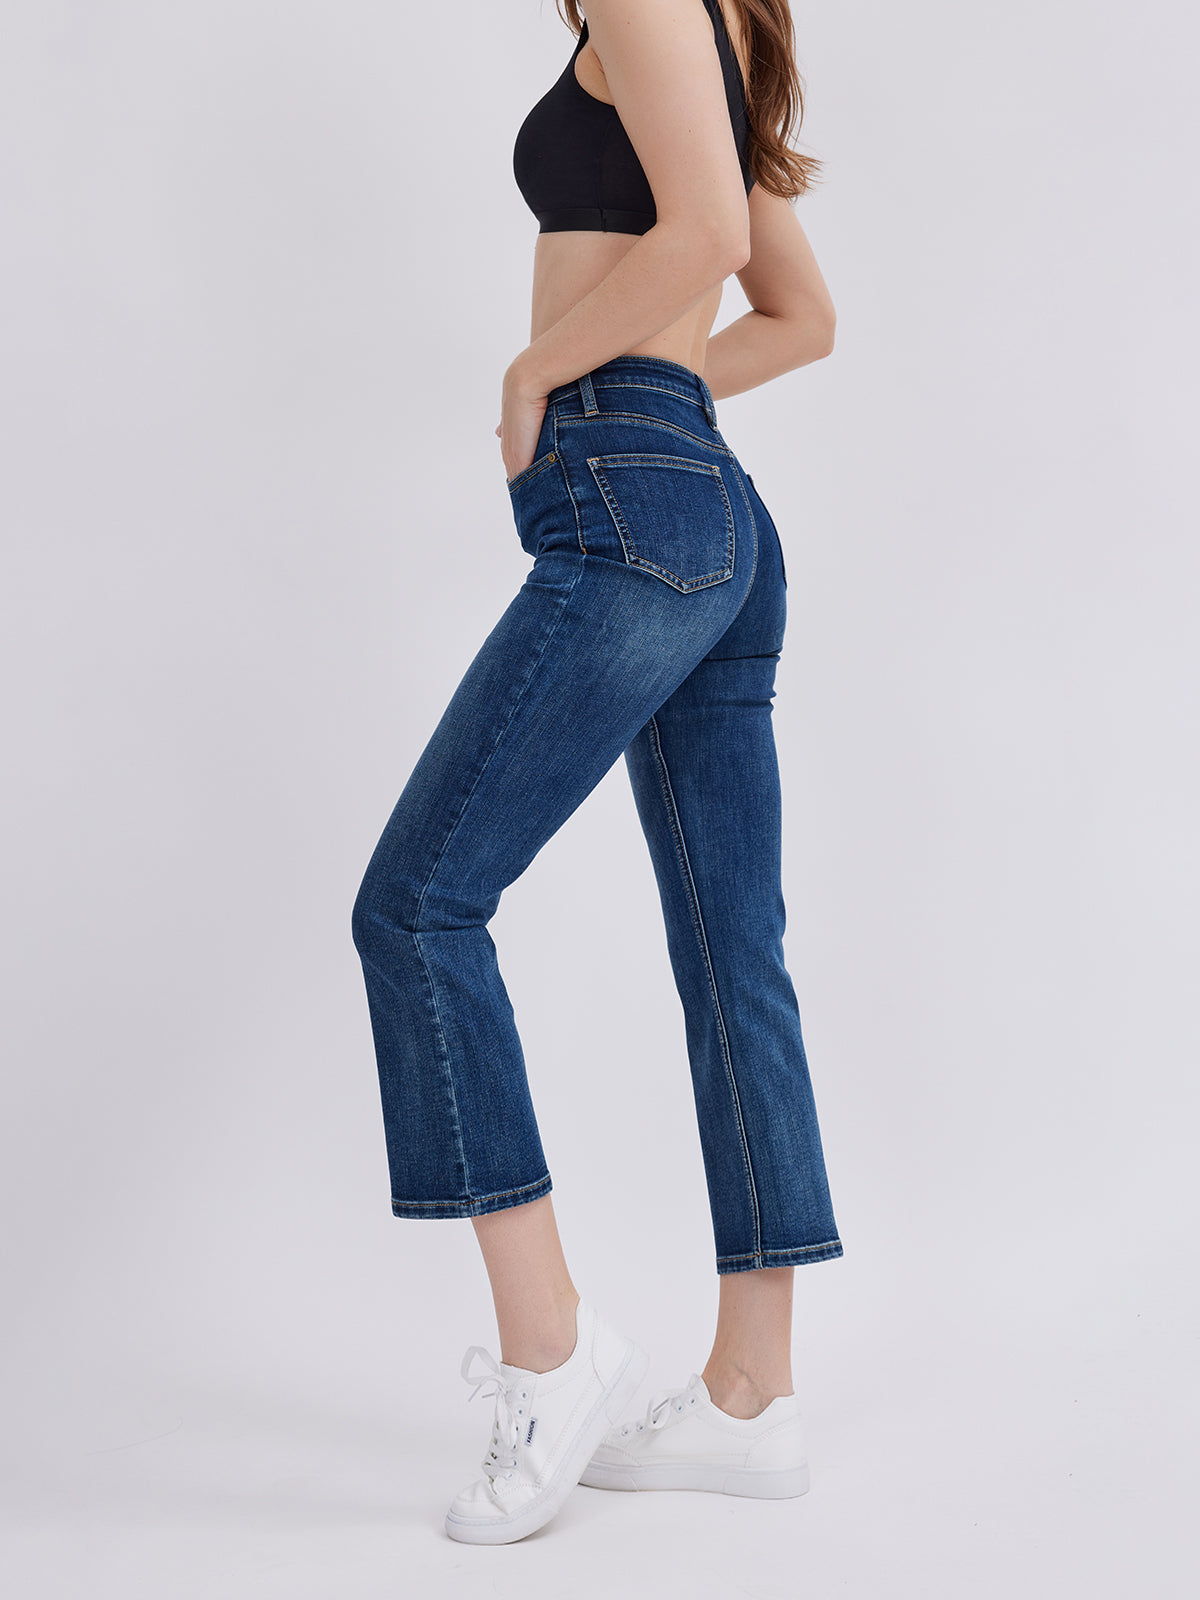 Asobio Women's Jeans